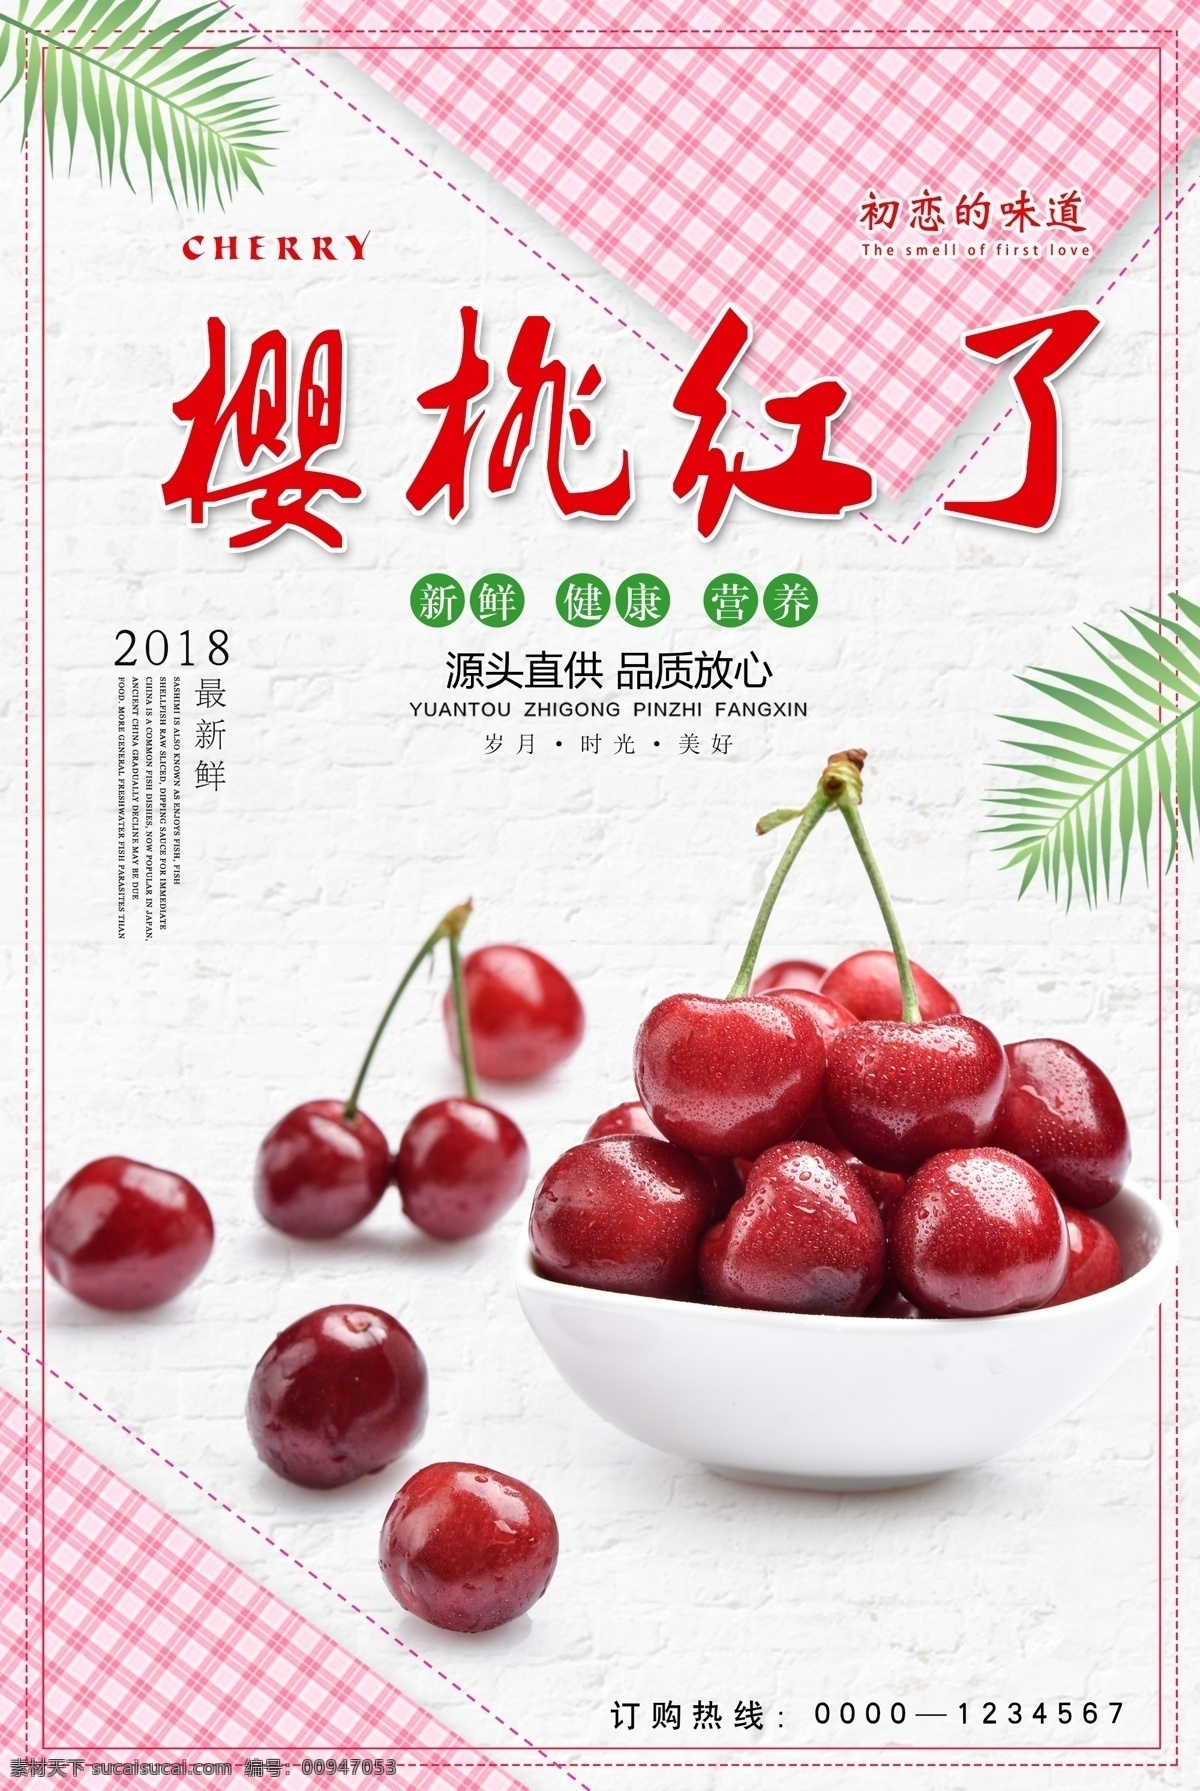 樱桃红了海报 樱桃 水果 水果生鲜 水果海报 樱桃海报 新鲜水果 绿色健康 海报